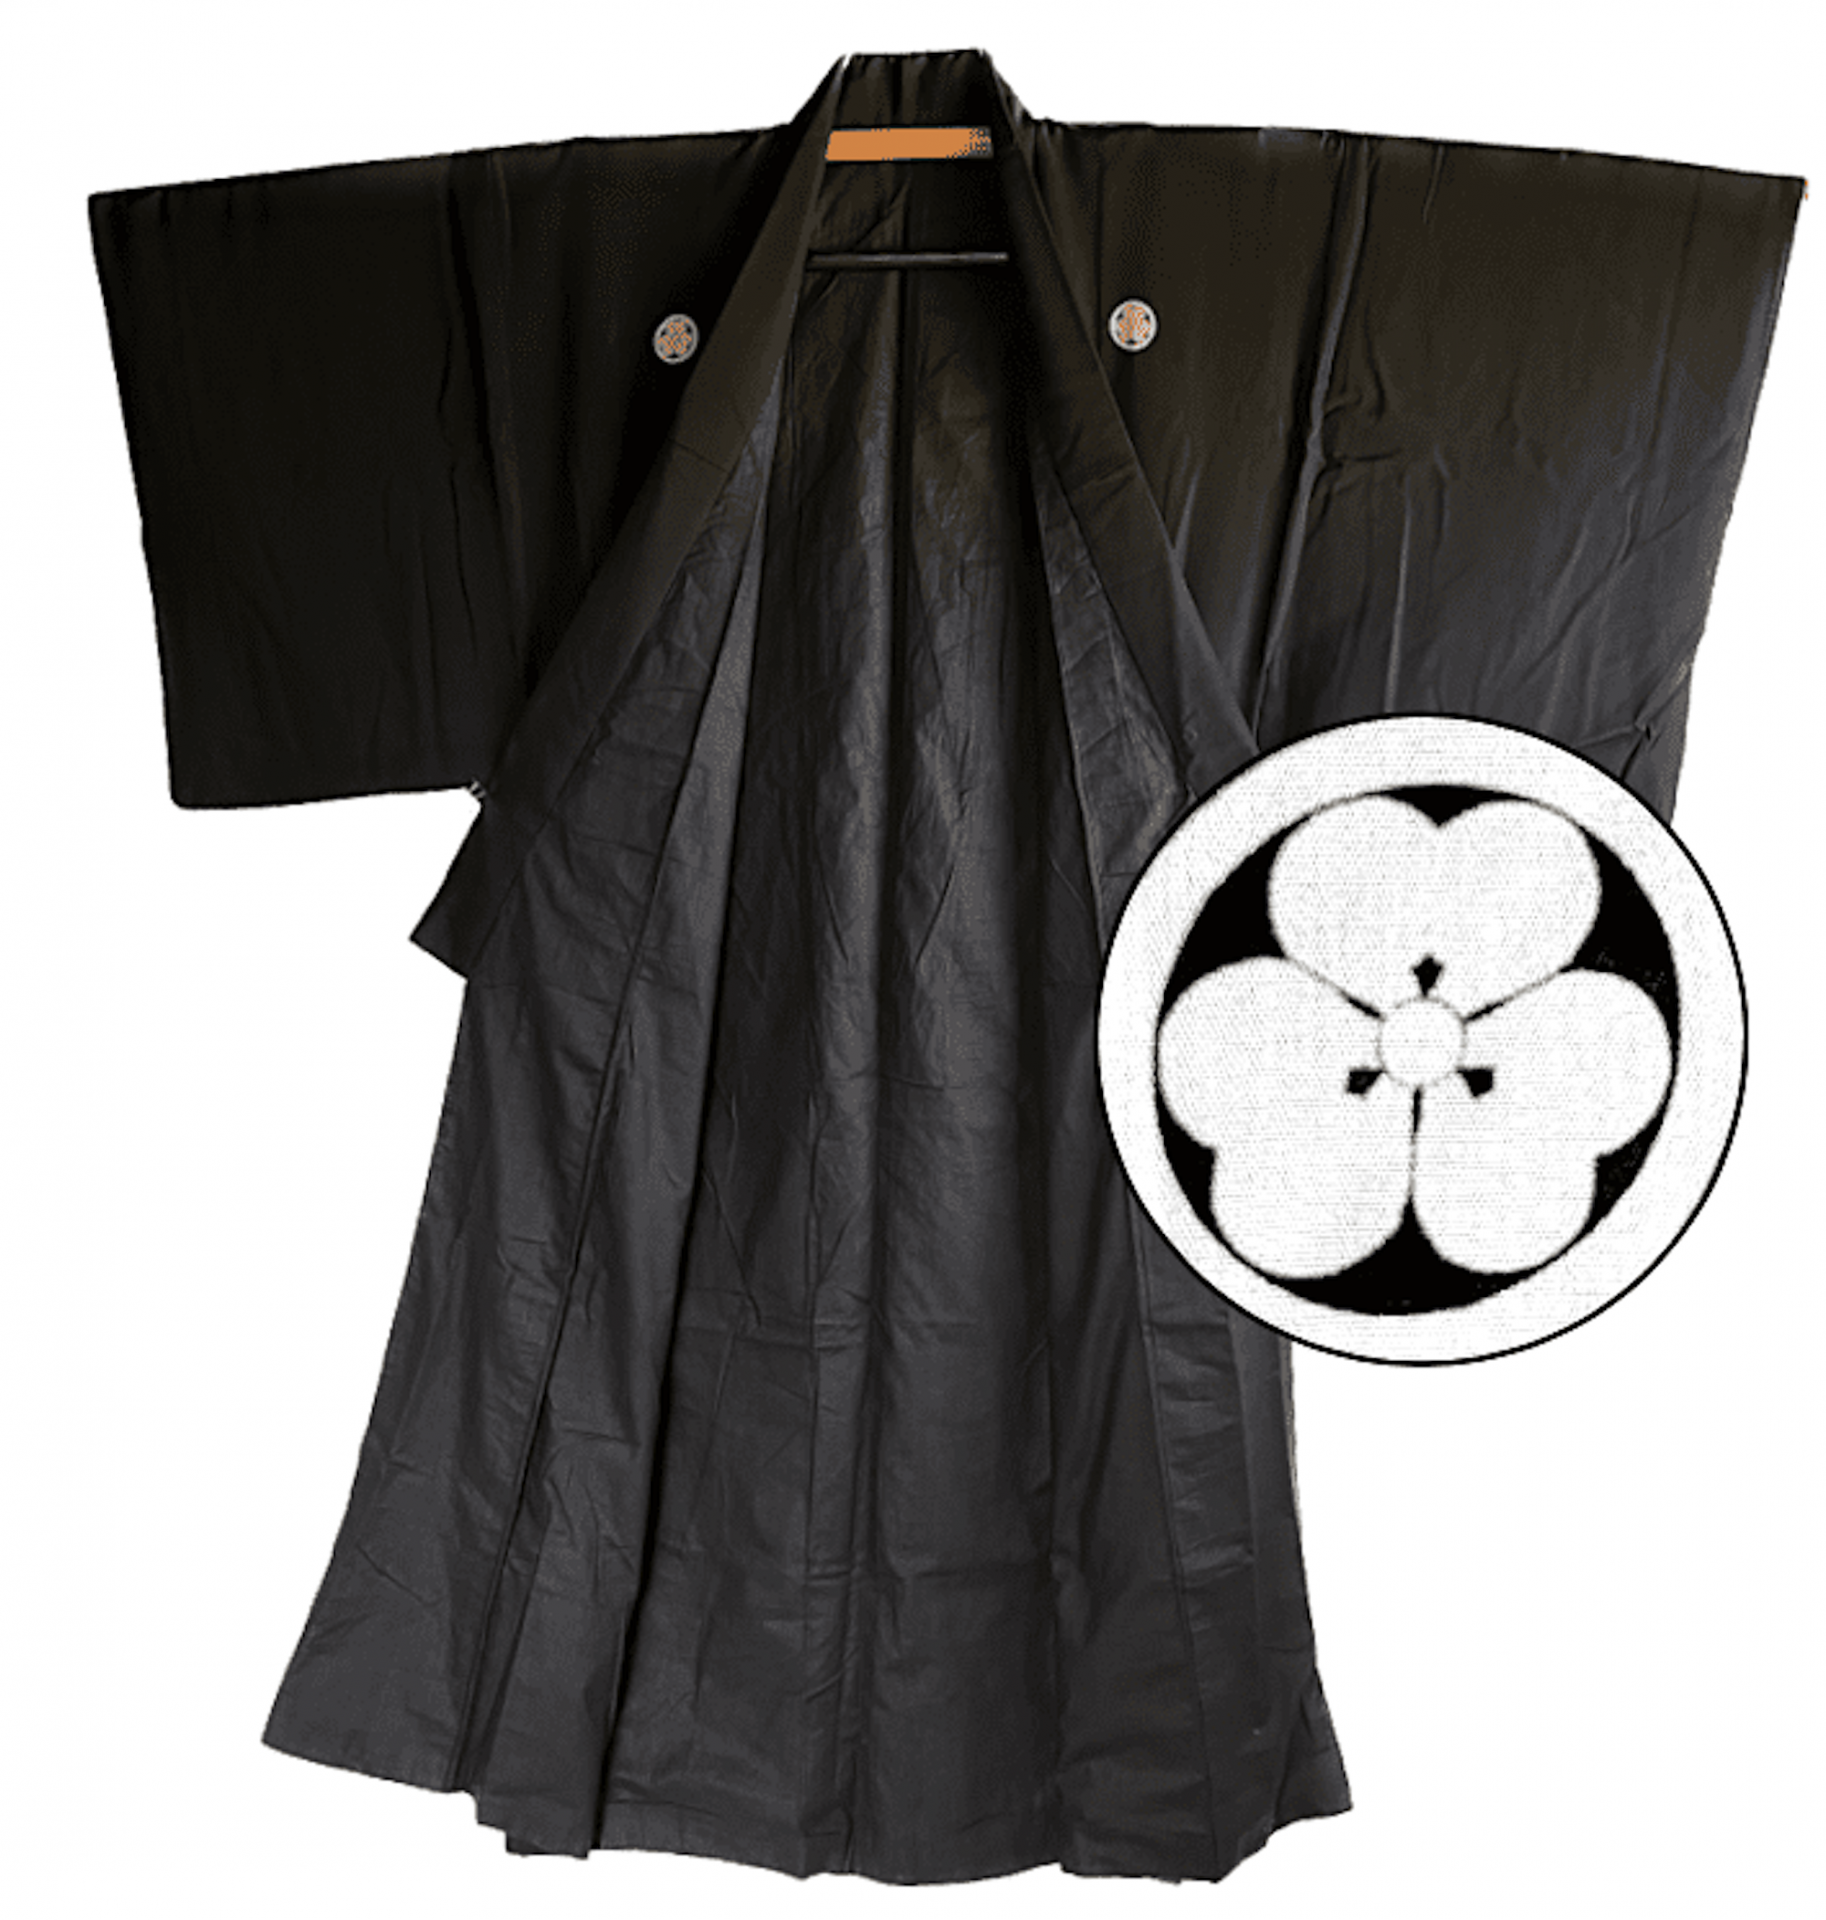 Antique kimono japonais soie noire ume montsuki homme